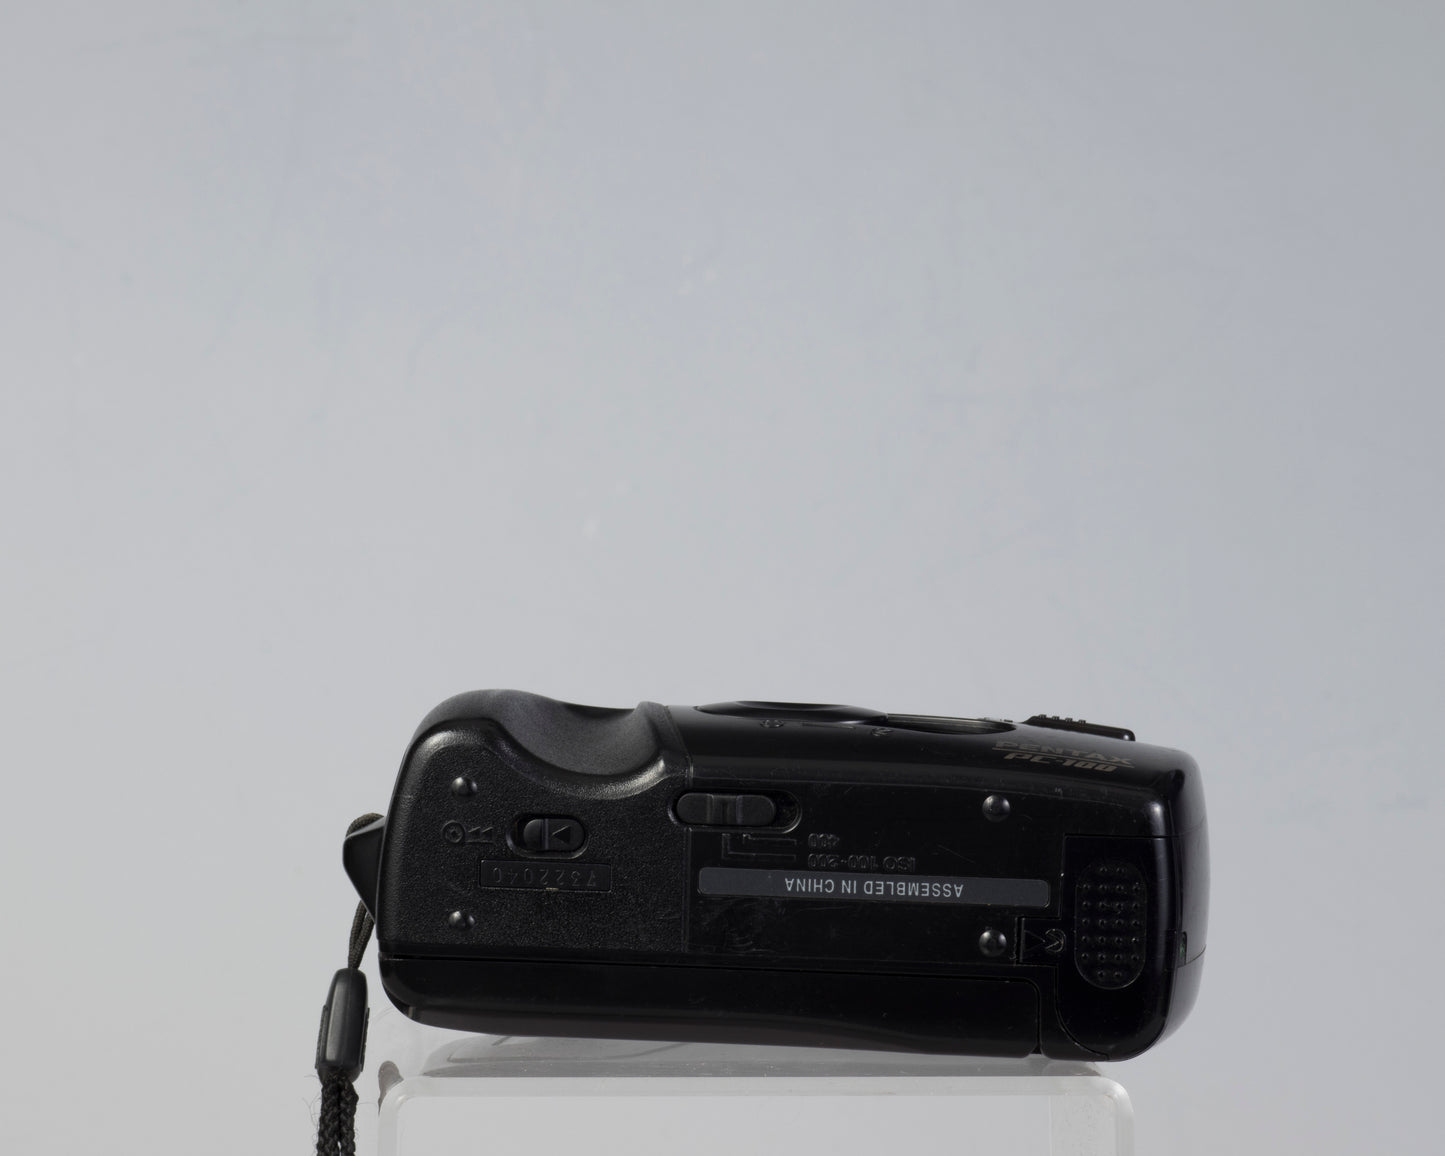 Appareil photo Pentax PC-300 compact 35 mm avec étui (série 7322040)